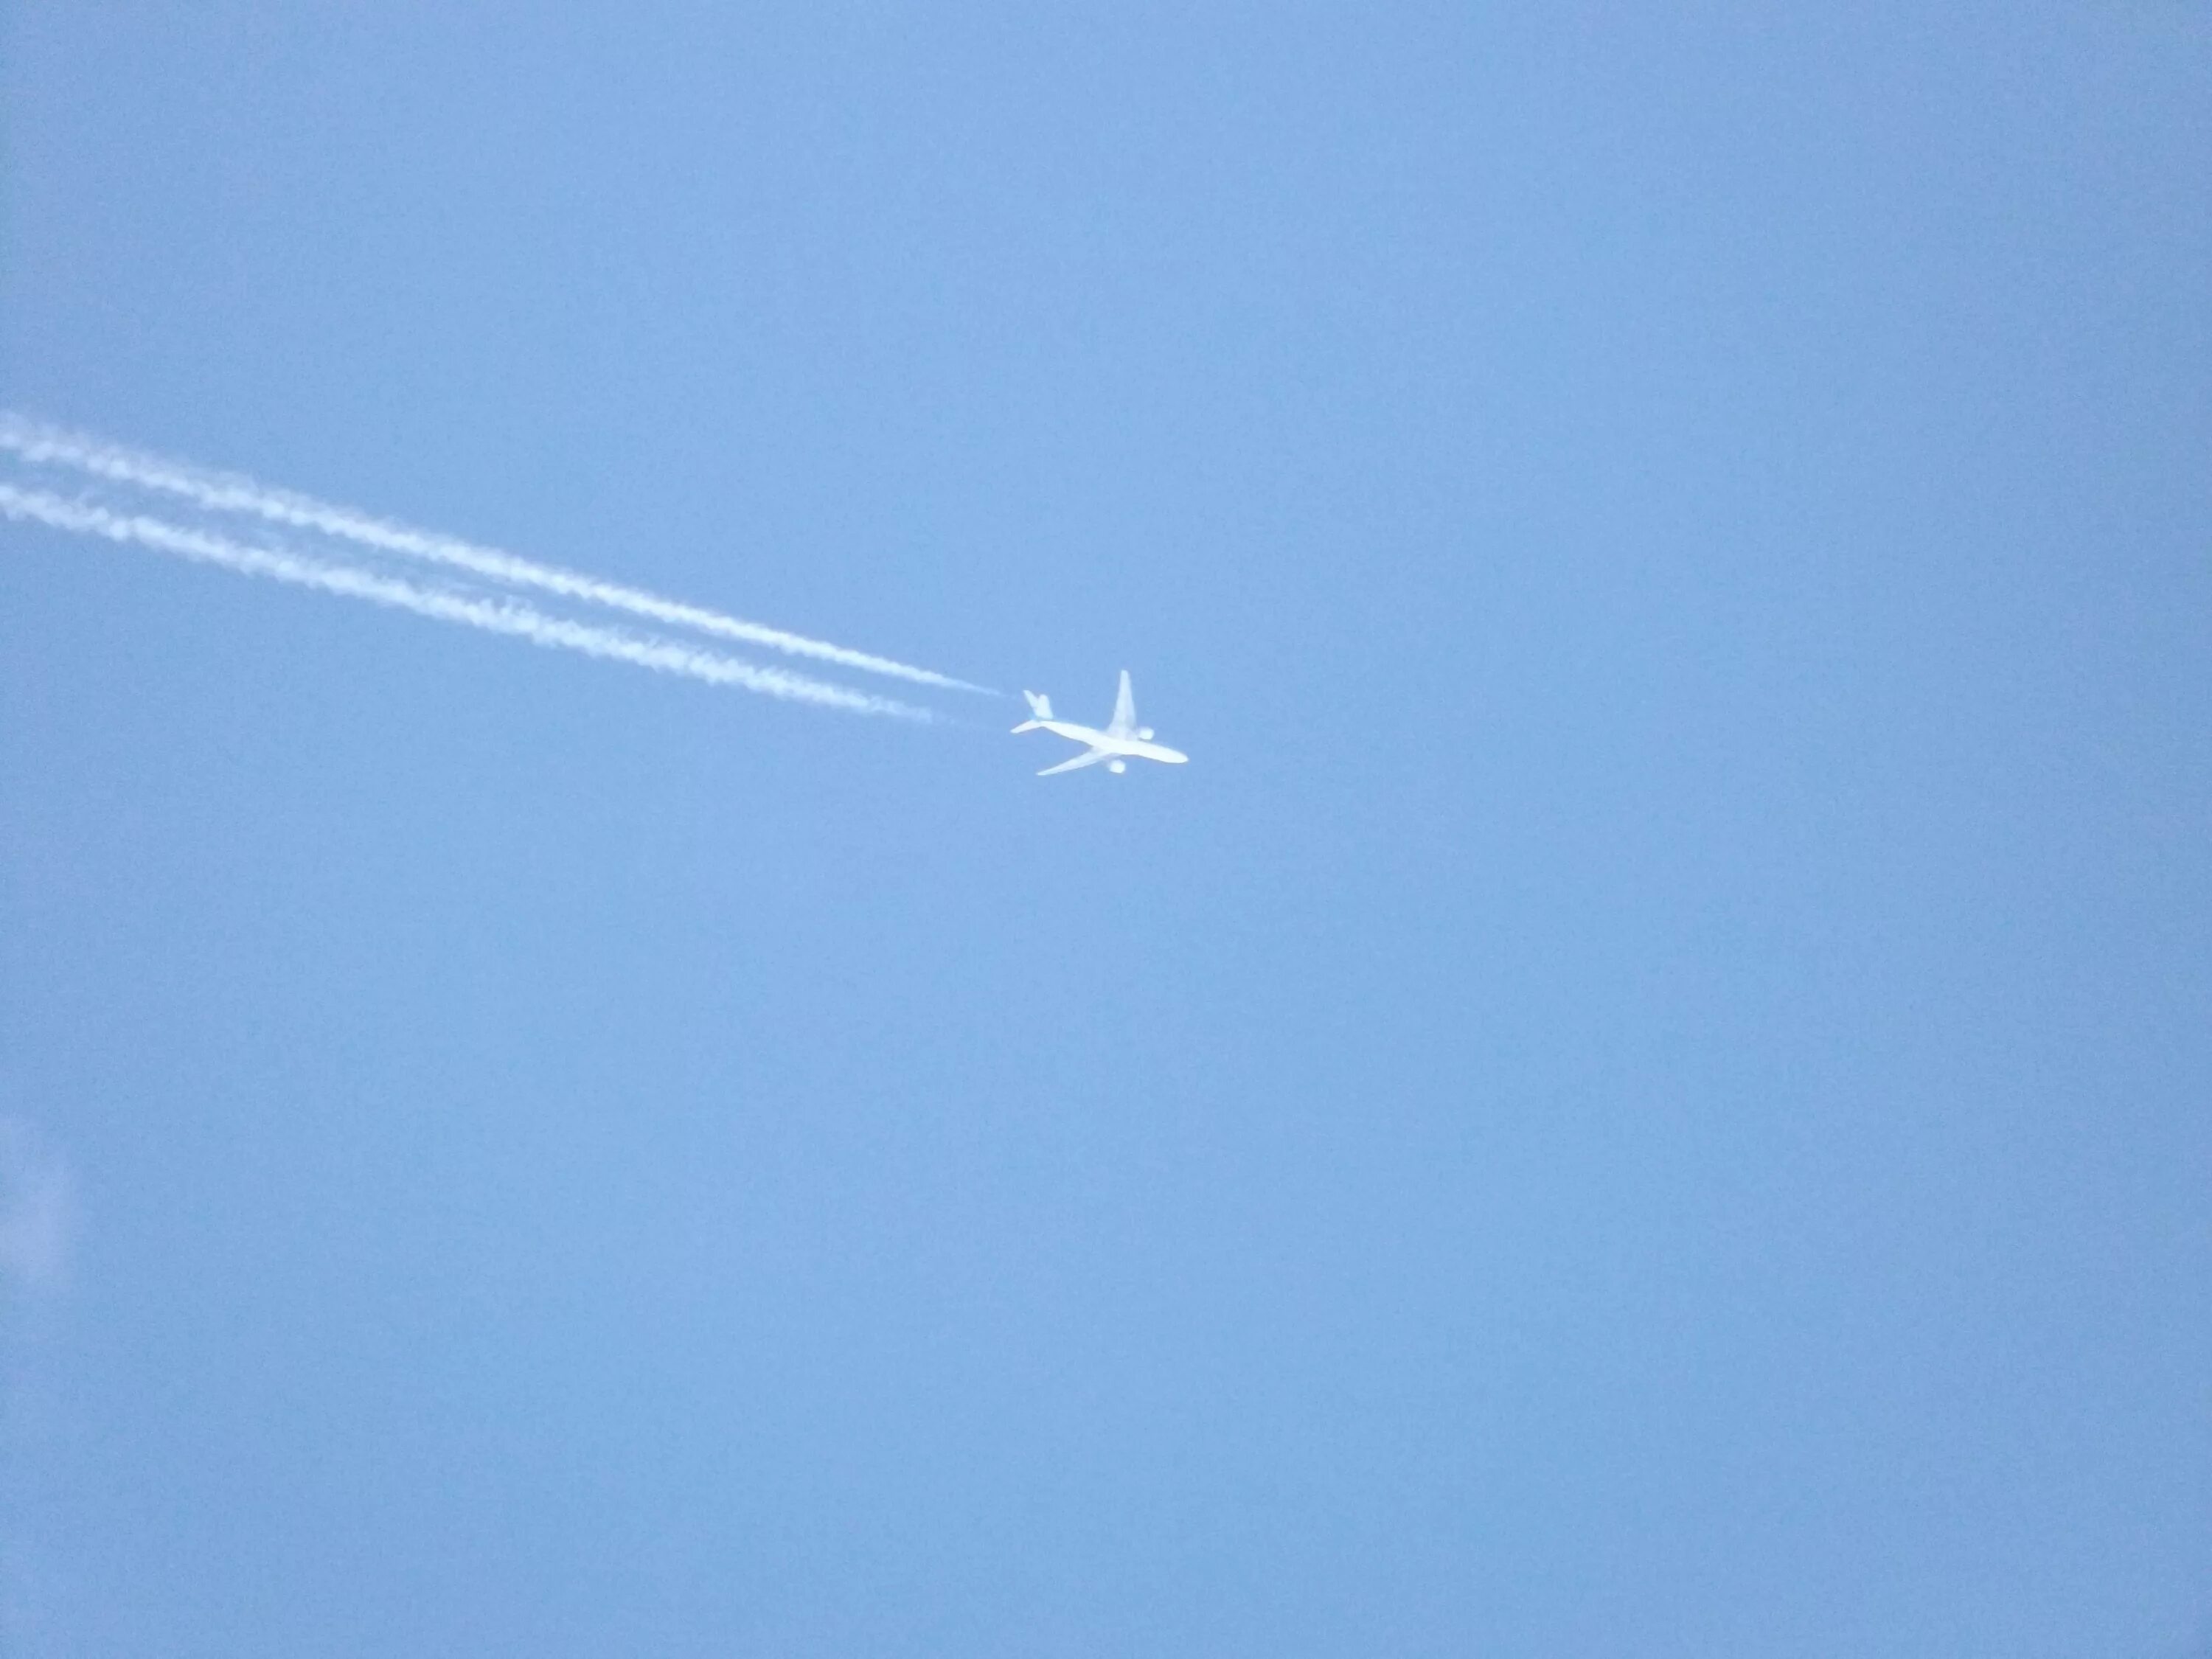 Самолет в небе. Cfvjktn DF yt,t. Самолет вдалеке. Самолет далеко в небе. За пролетающим самолетом видна темная полоса